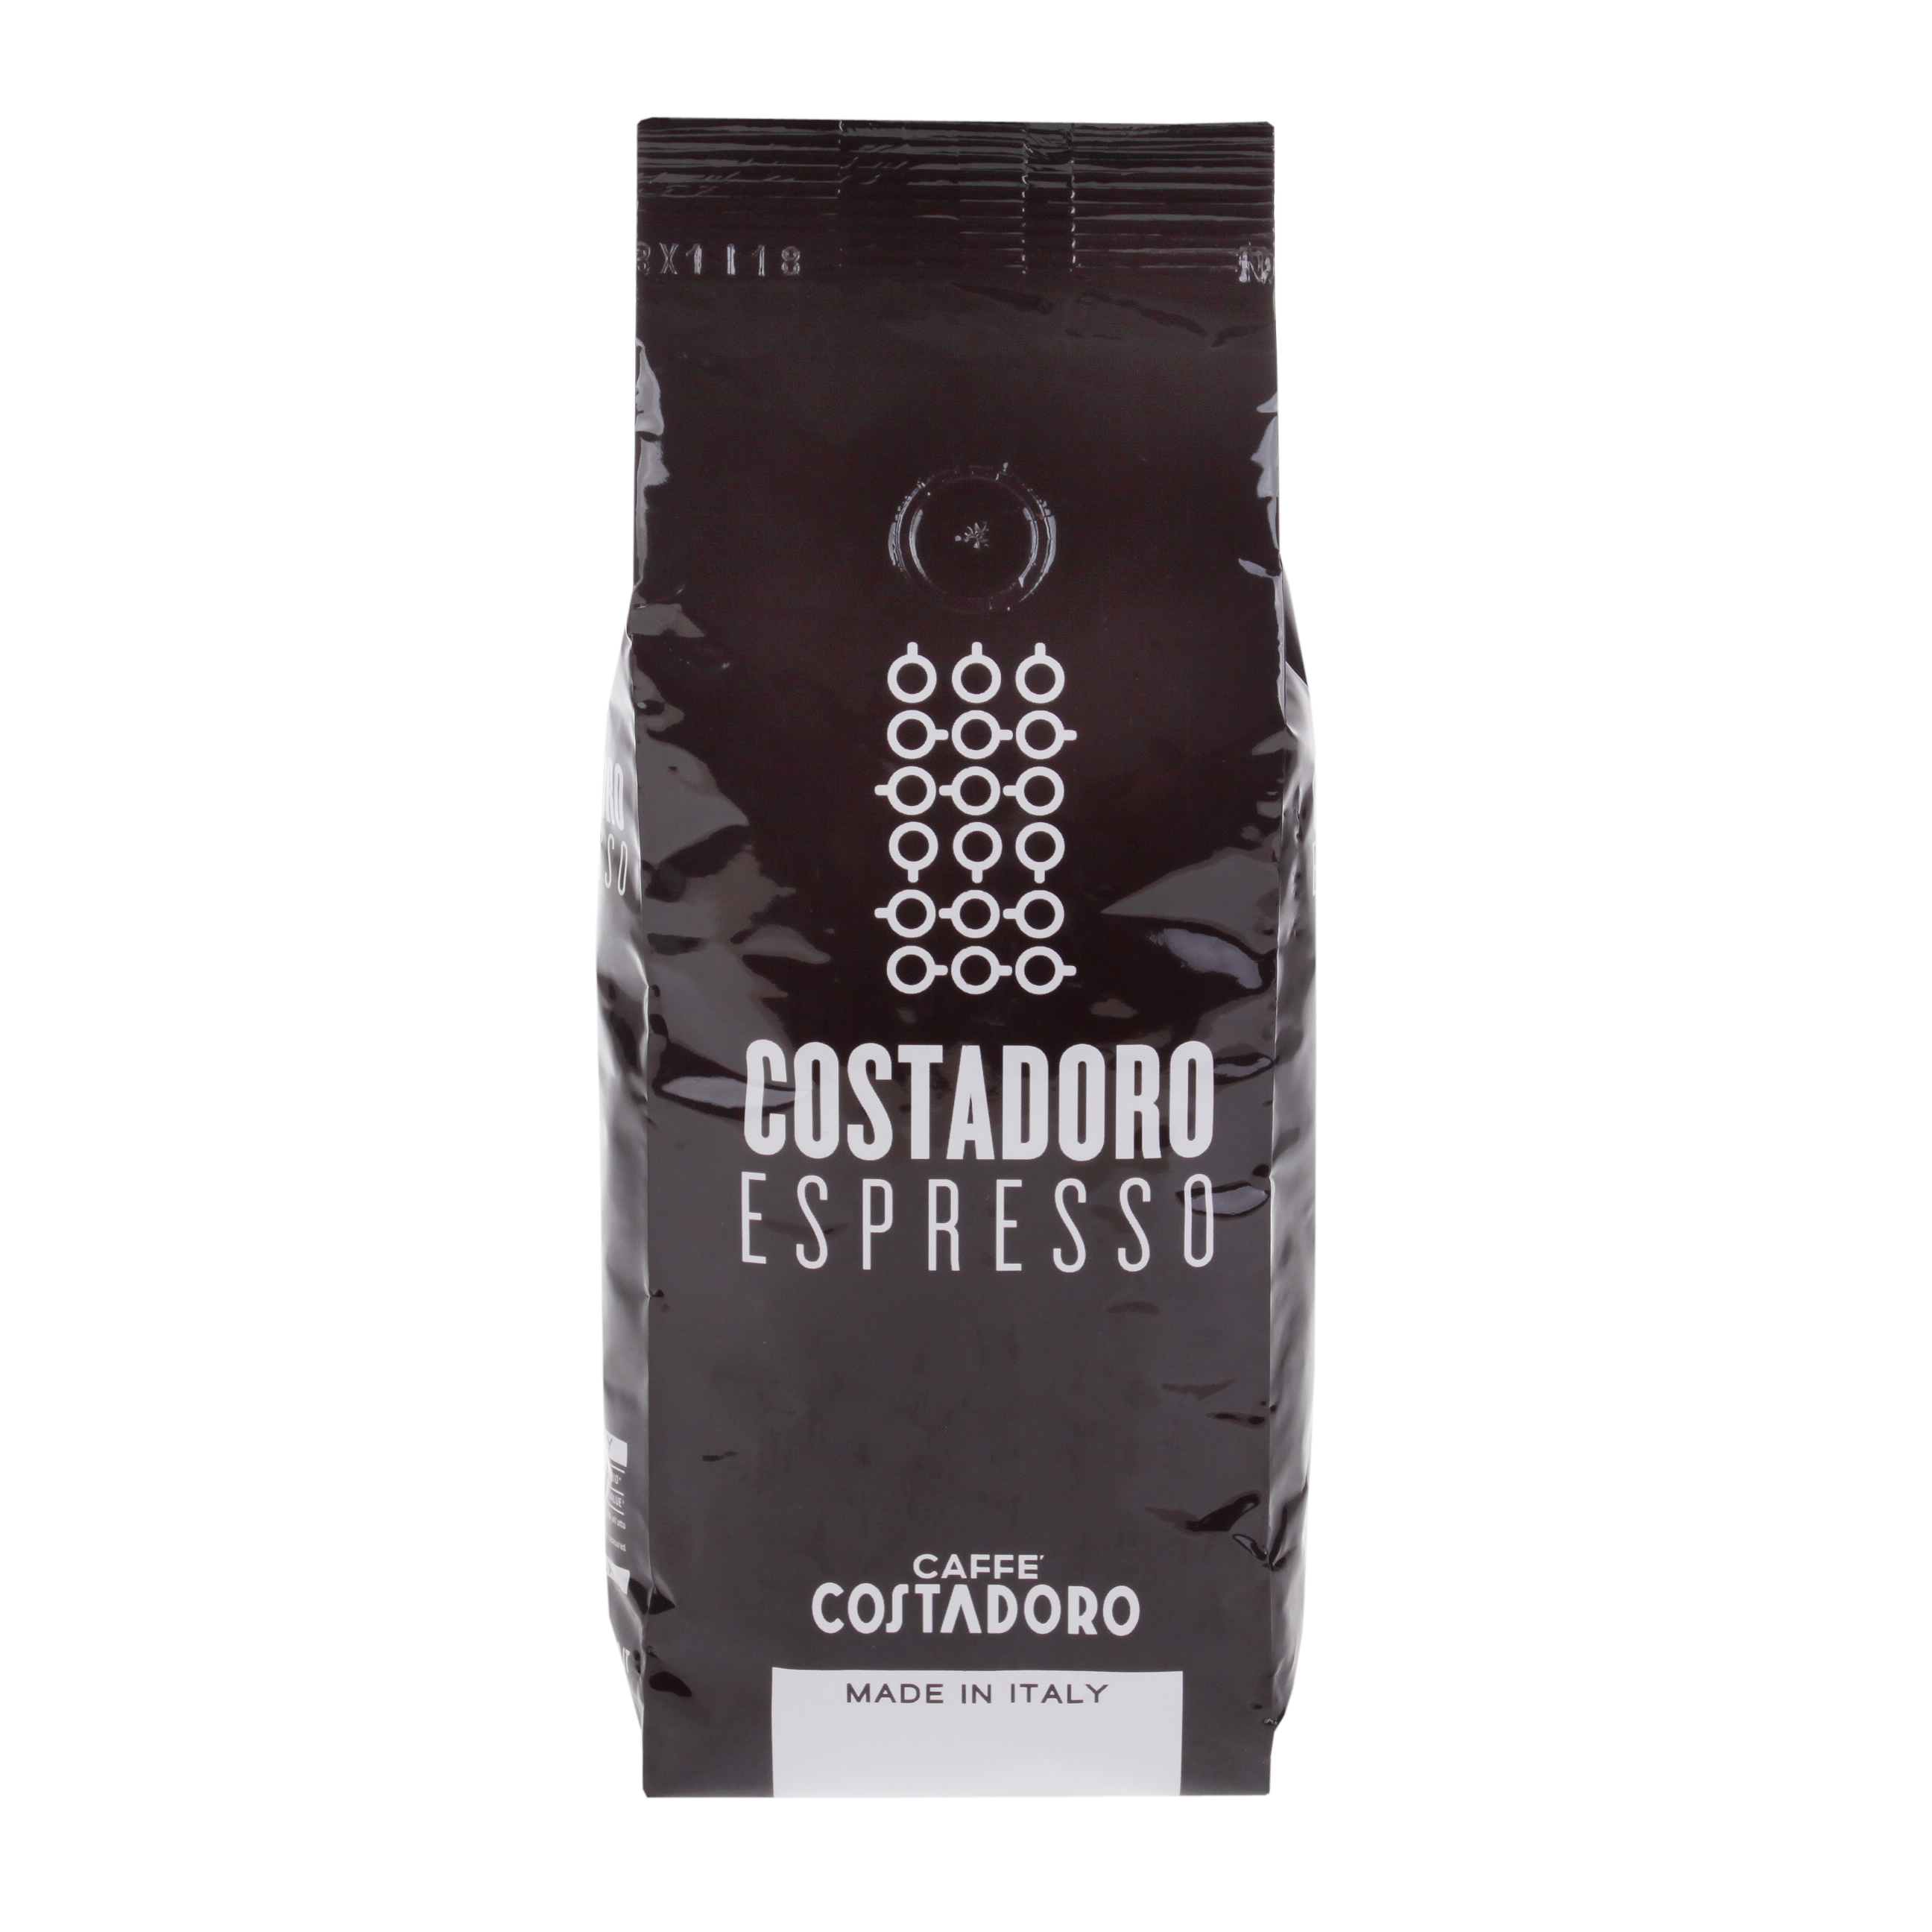 Costadoro Espresso